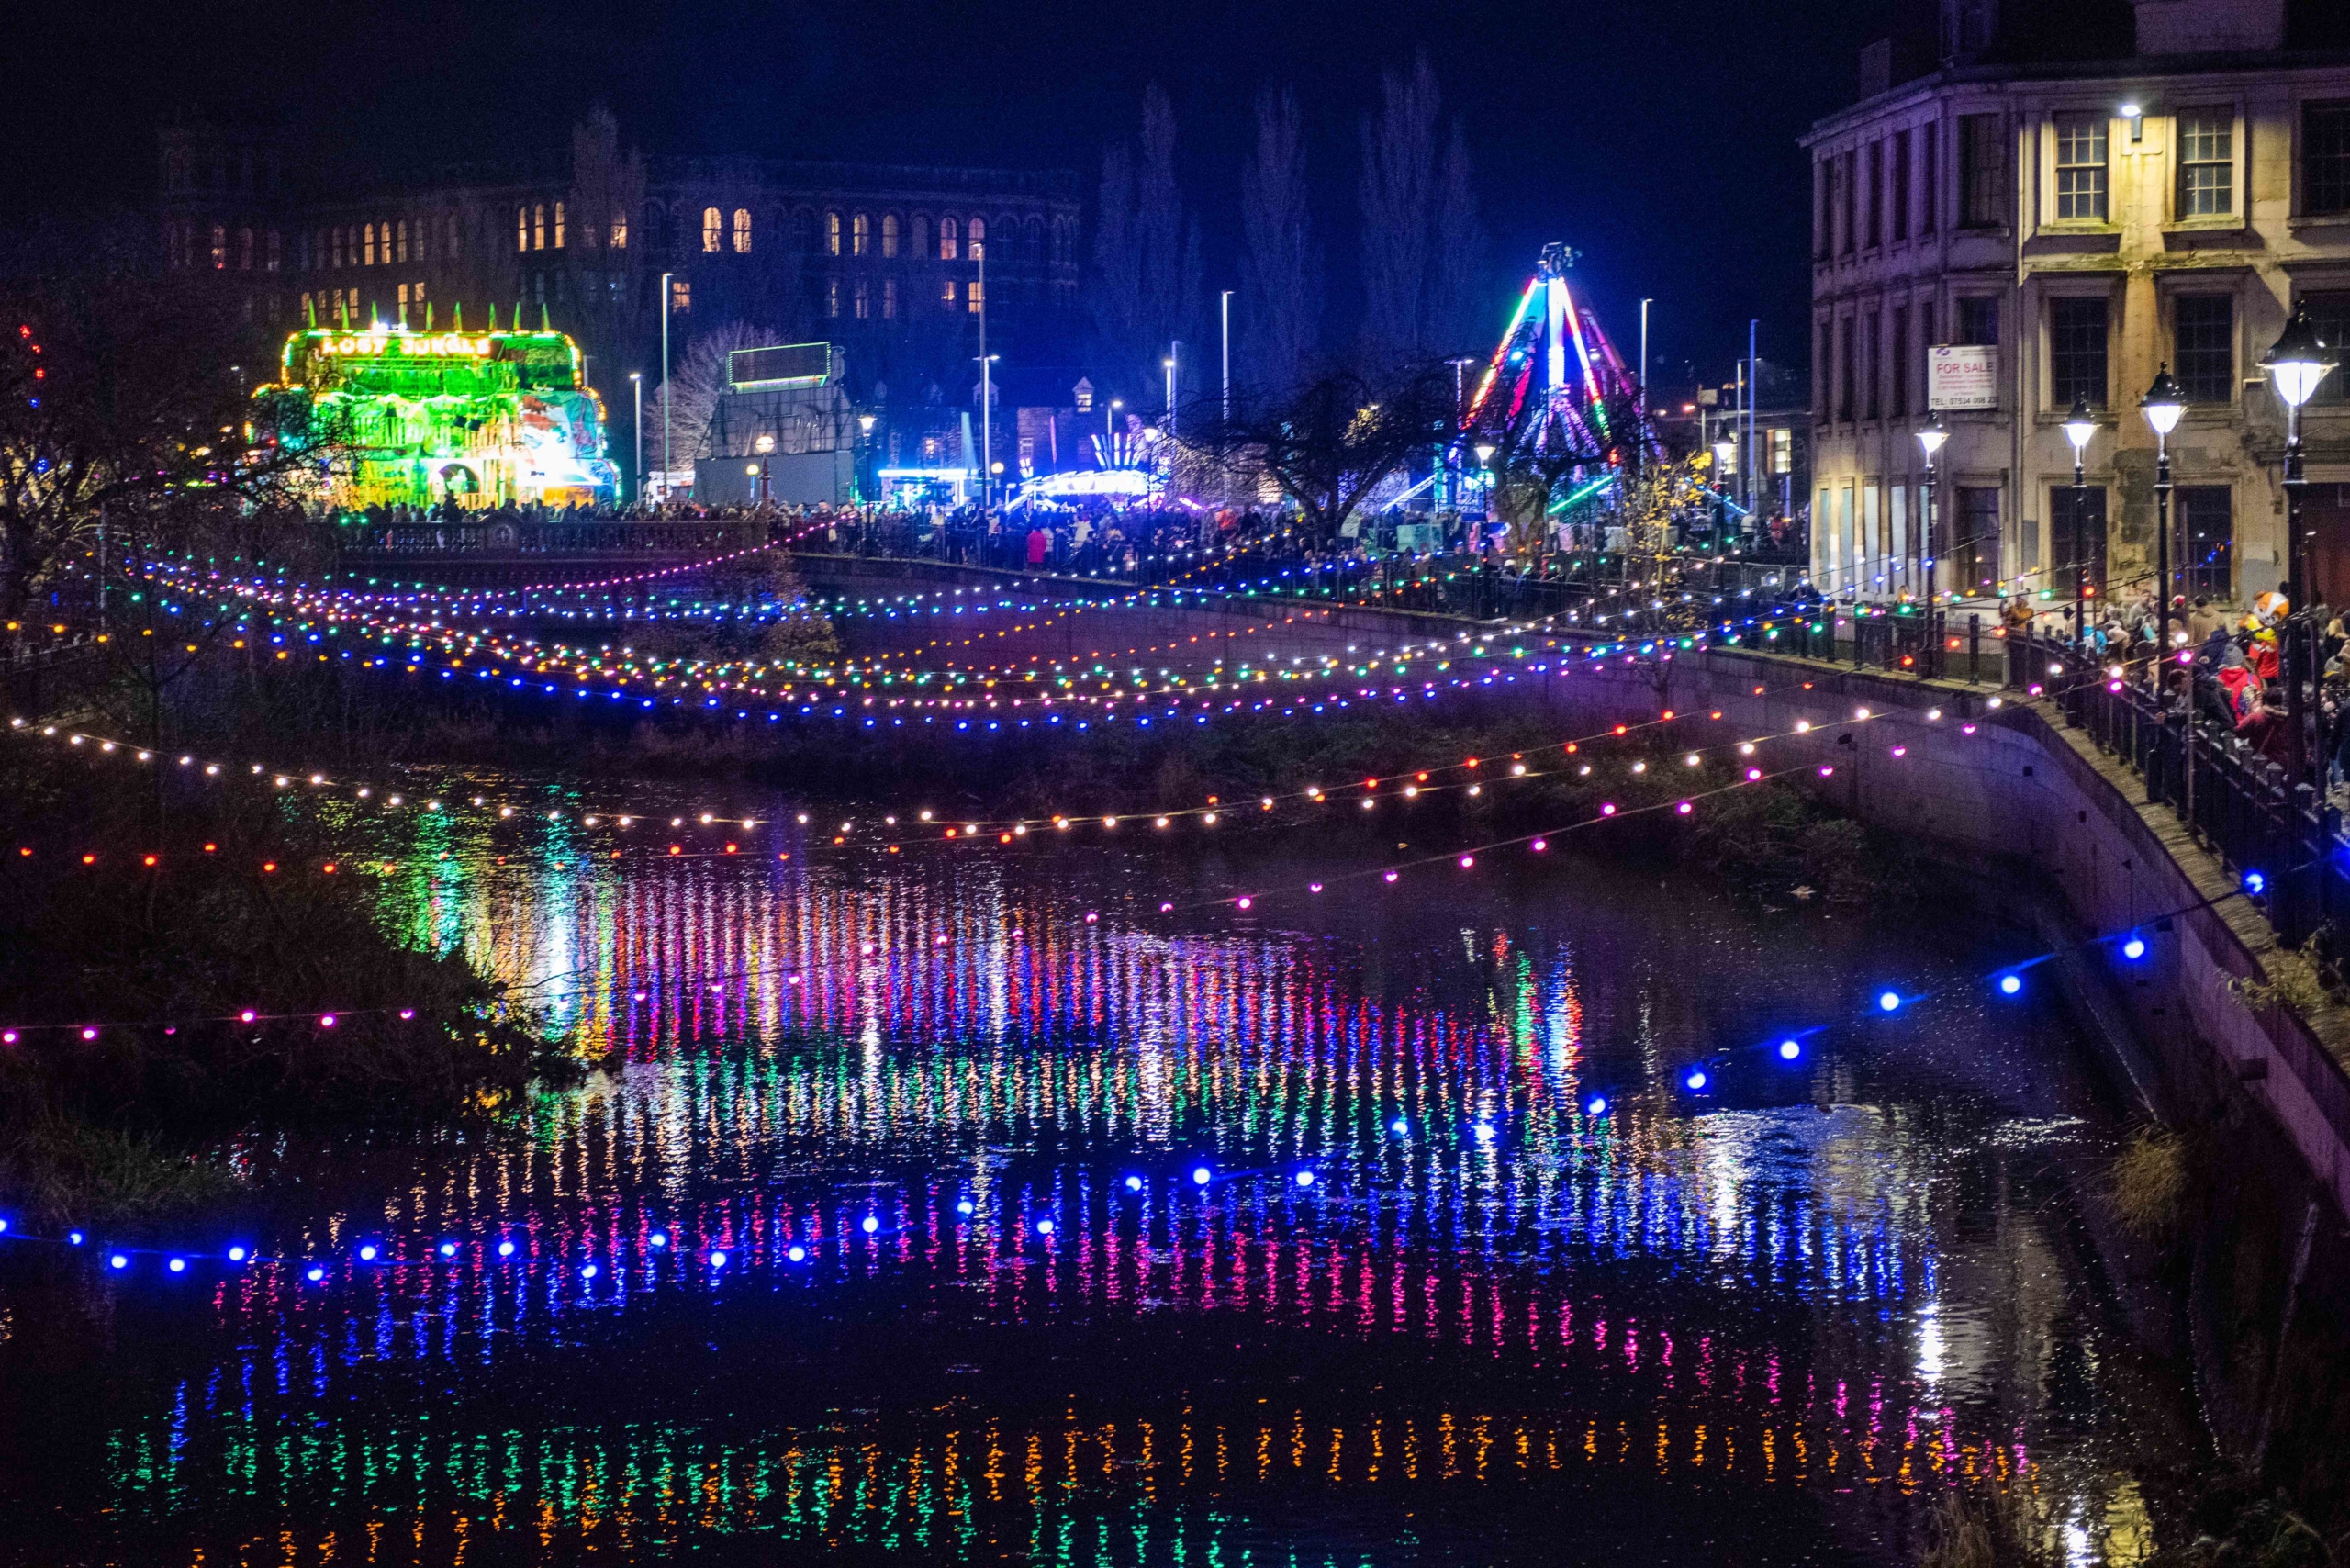 Paisley Christmas Lights 2019